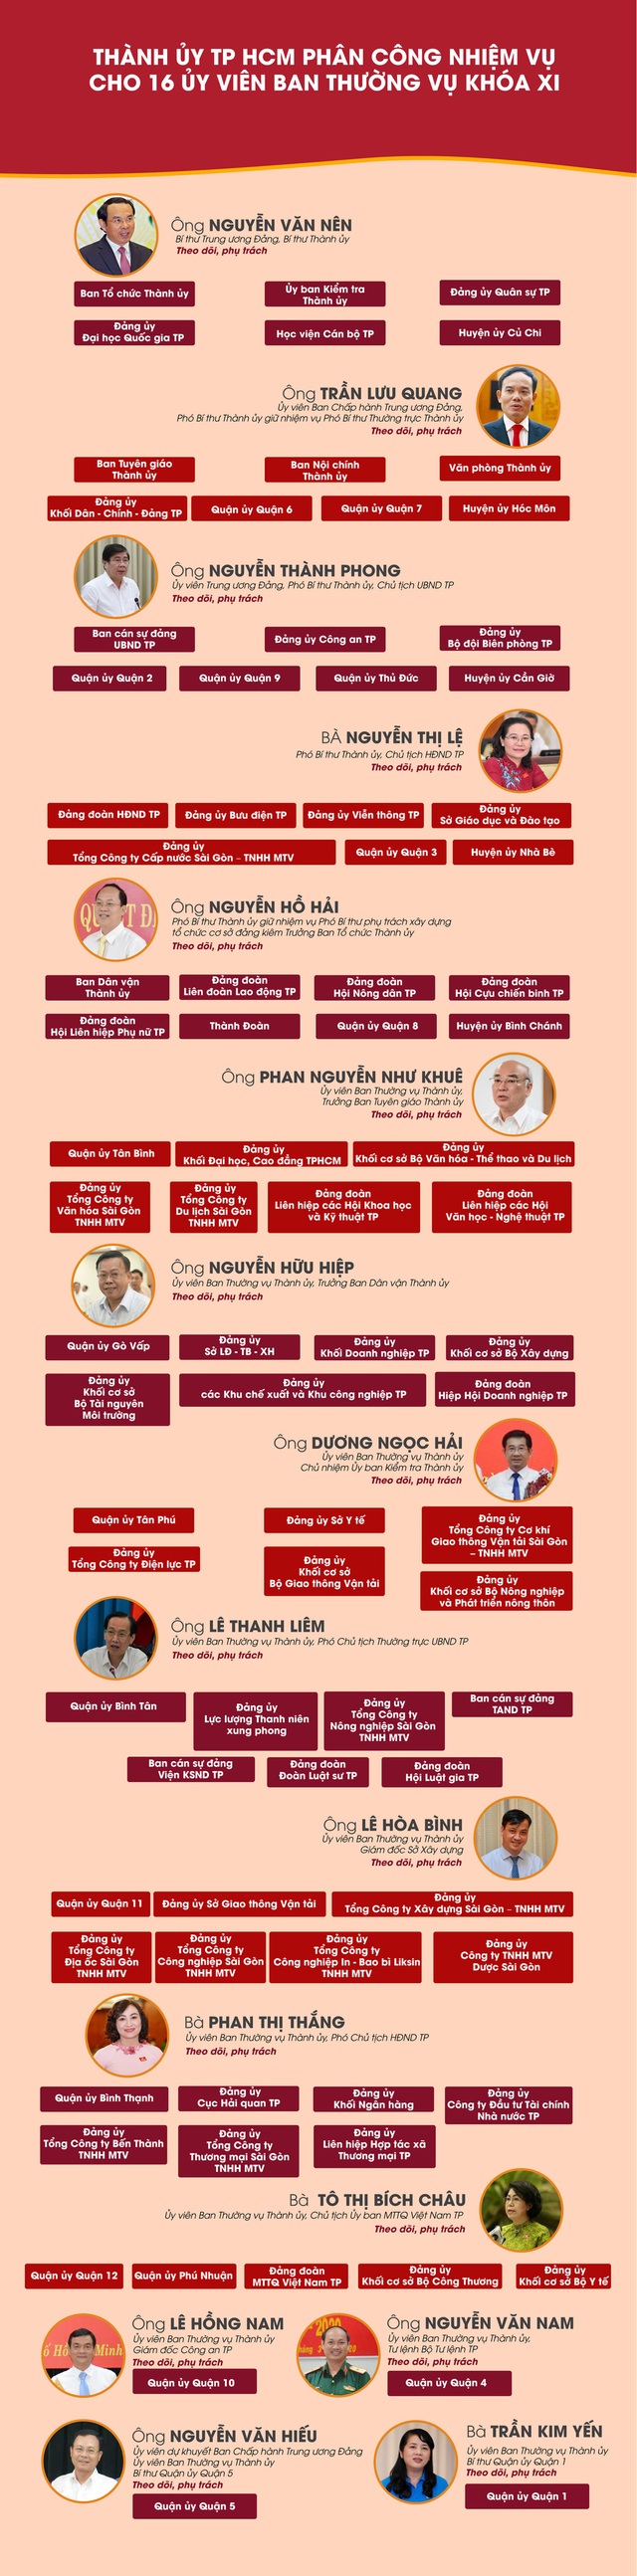  [Infographic] Nhiệm vụ cụ thể của 16 Ủy viên Ban Thường vụ Thành ủy TP HCM khóa XI  - Ảnh 1.